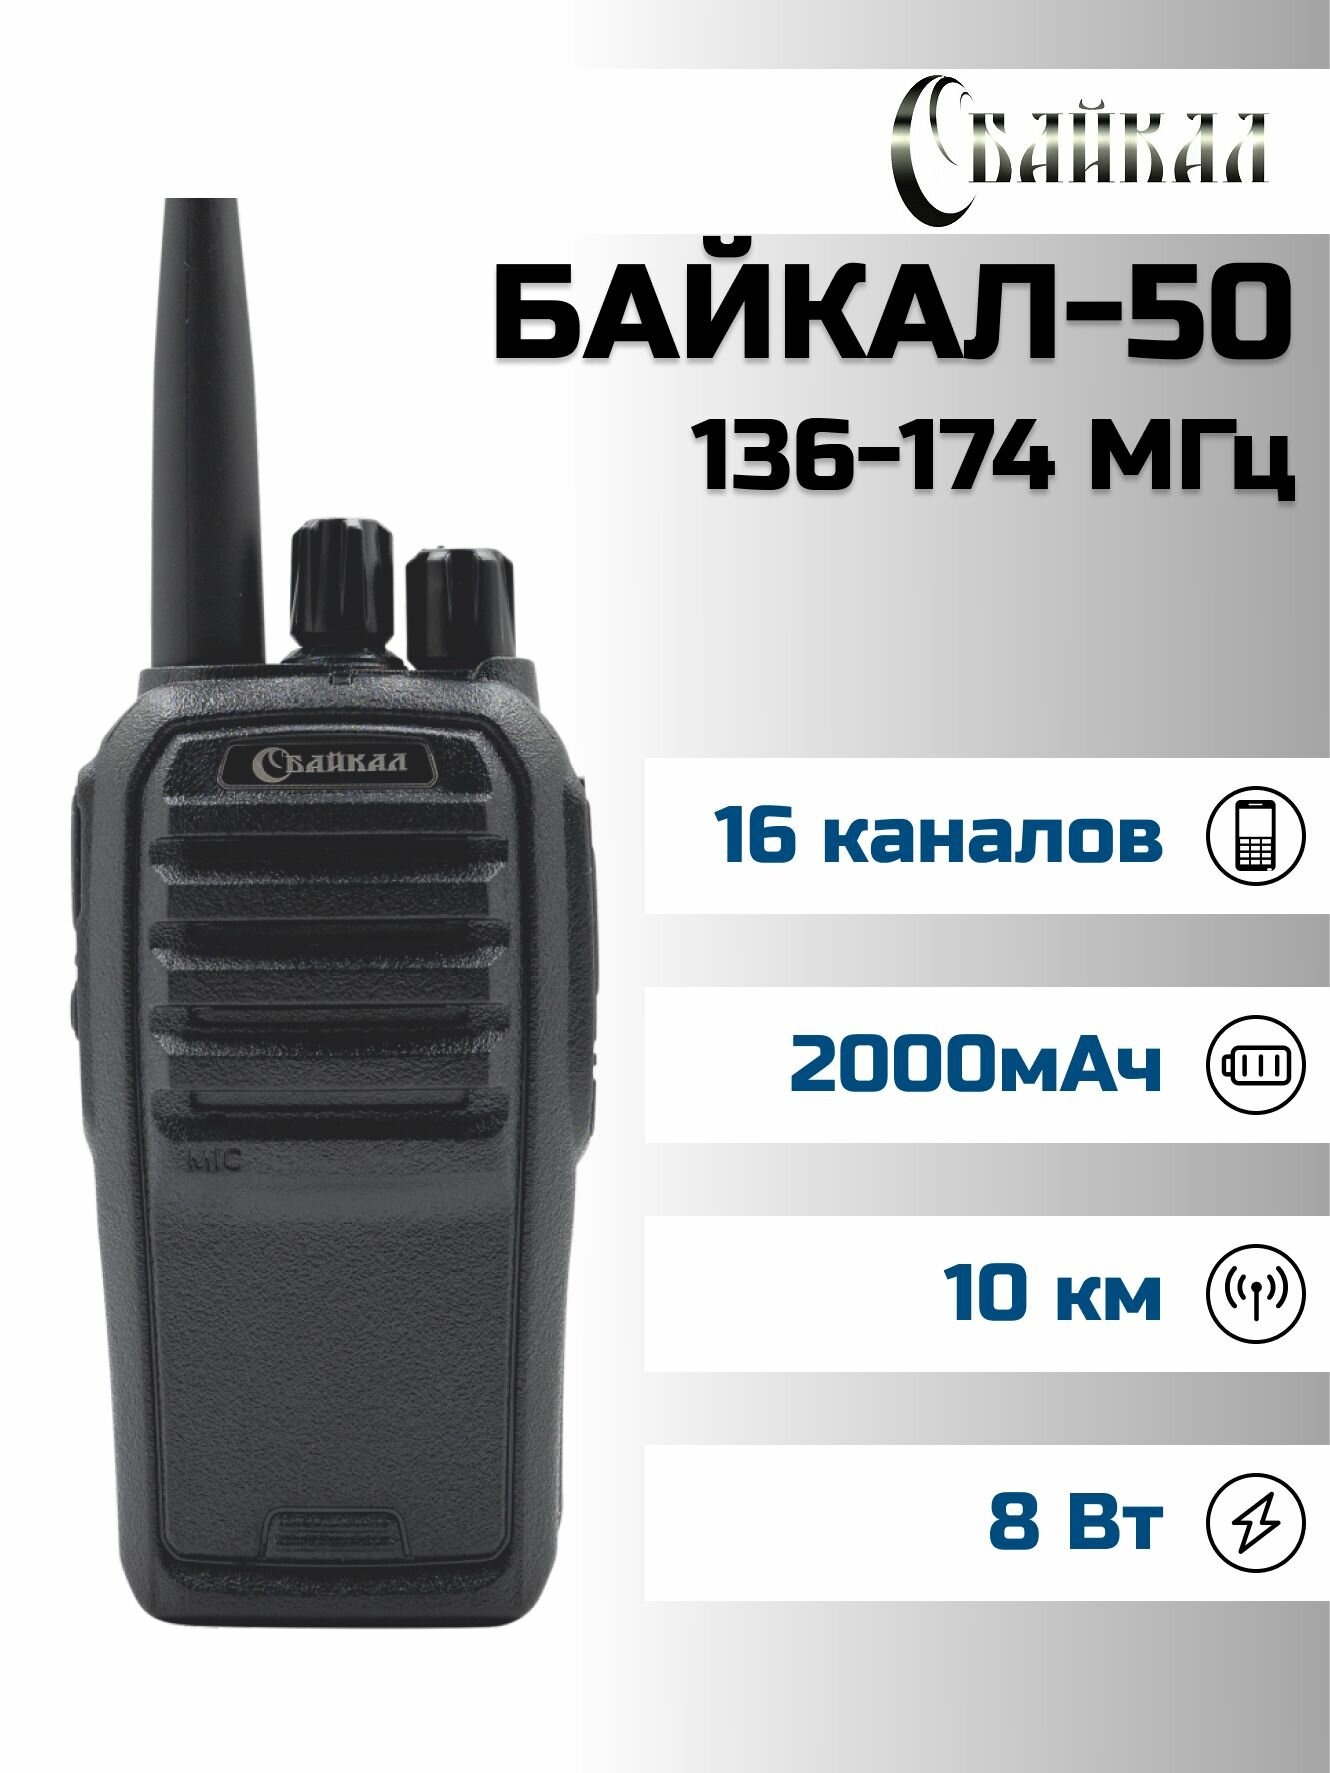 Портативная радиостанция Байкал-50 (136-174МГц), 1800 мАч, 8Вт